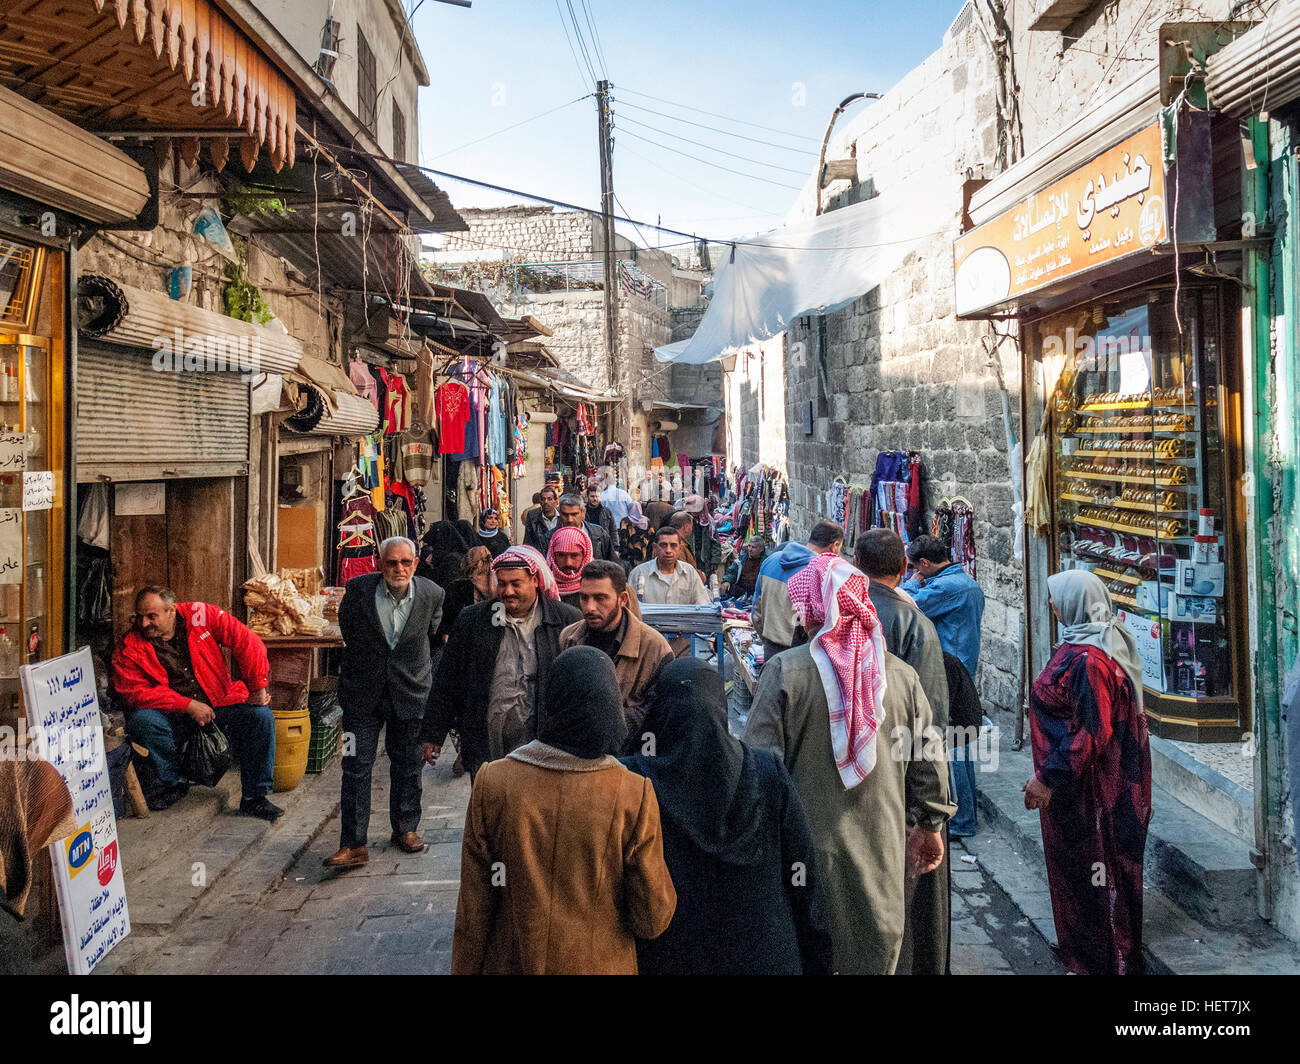 La rue commerçante animée des souks de la vieille ville d'Alep en Syrie Banque D'Images